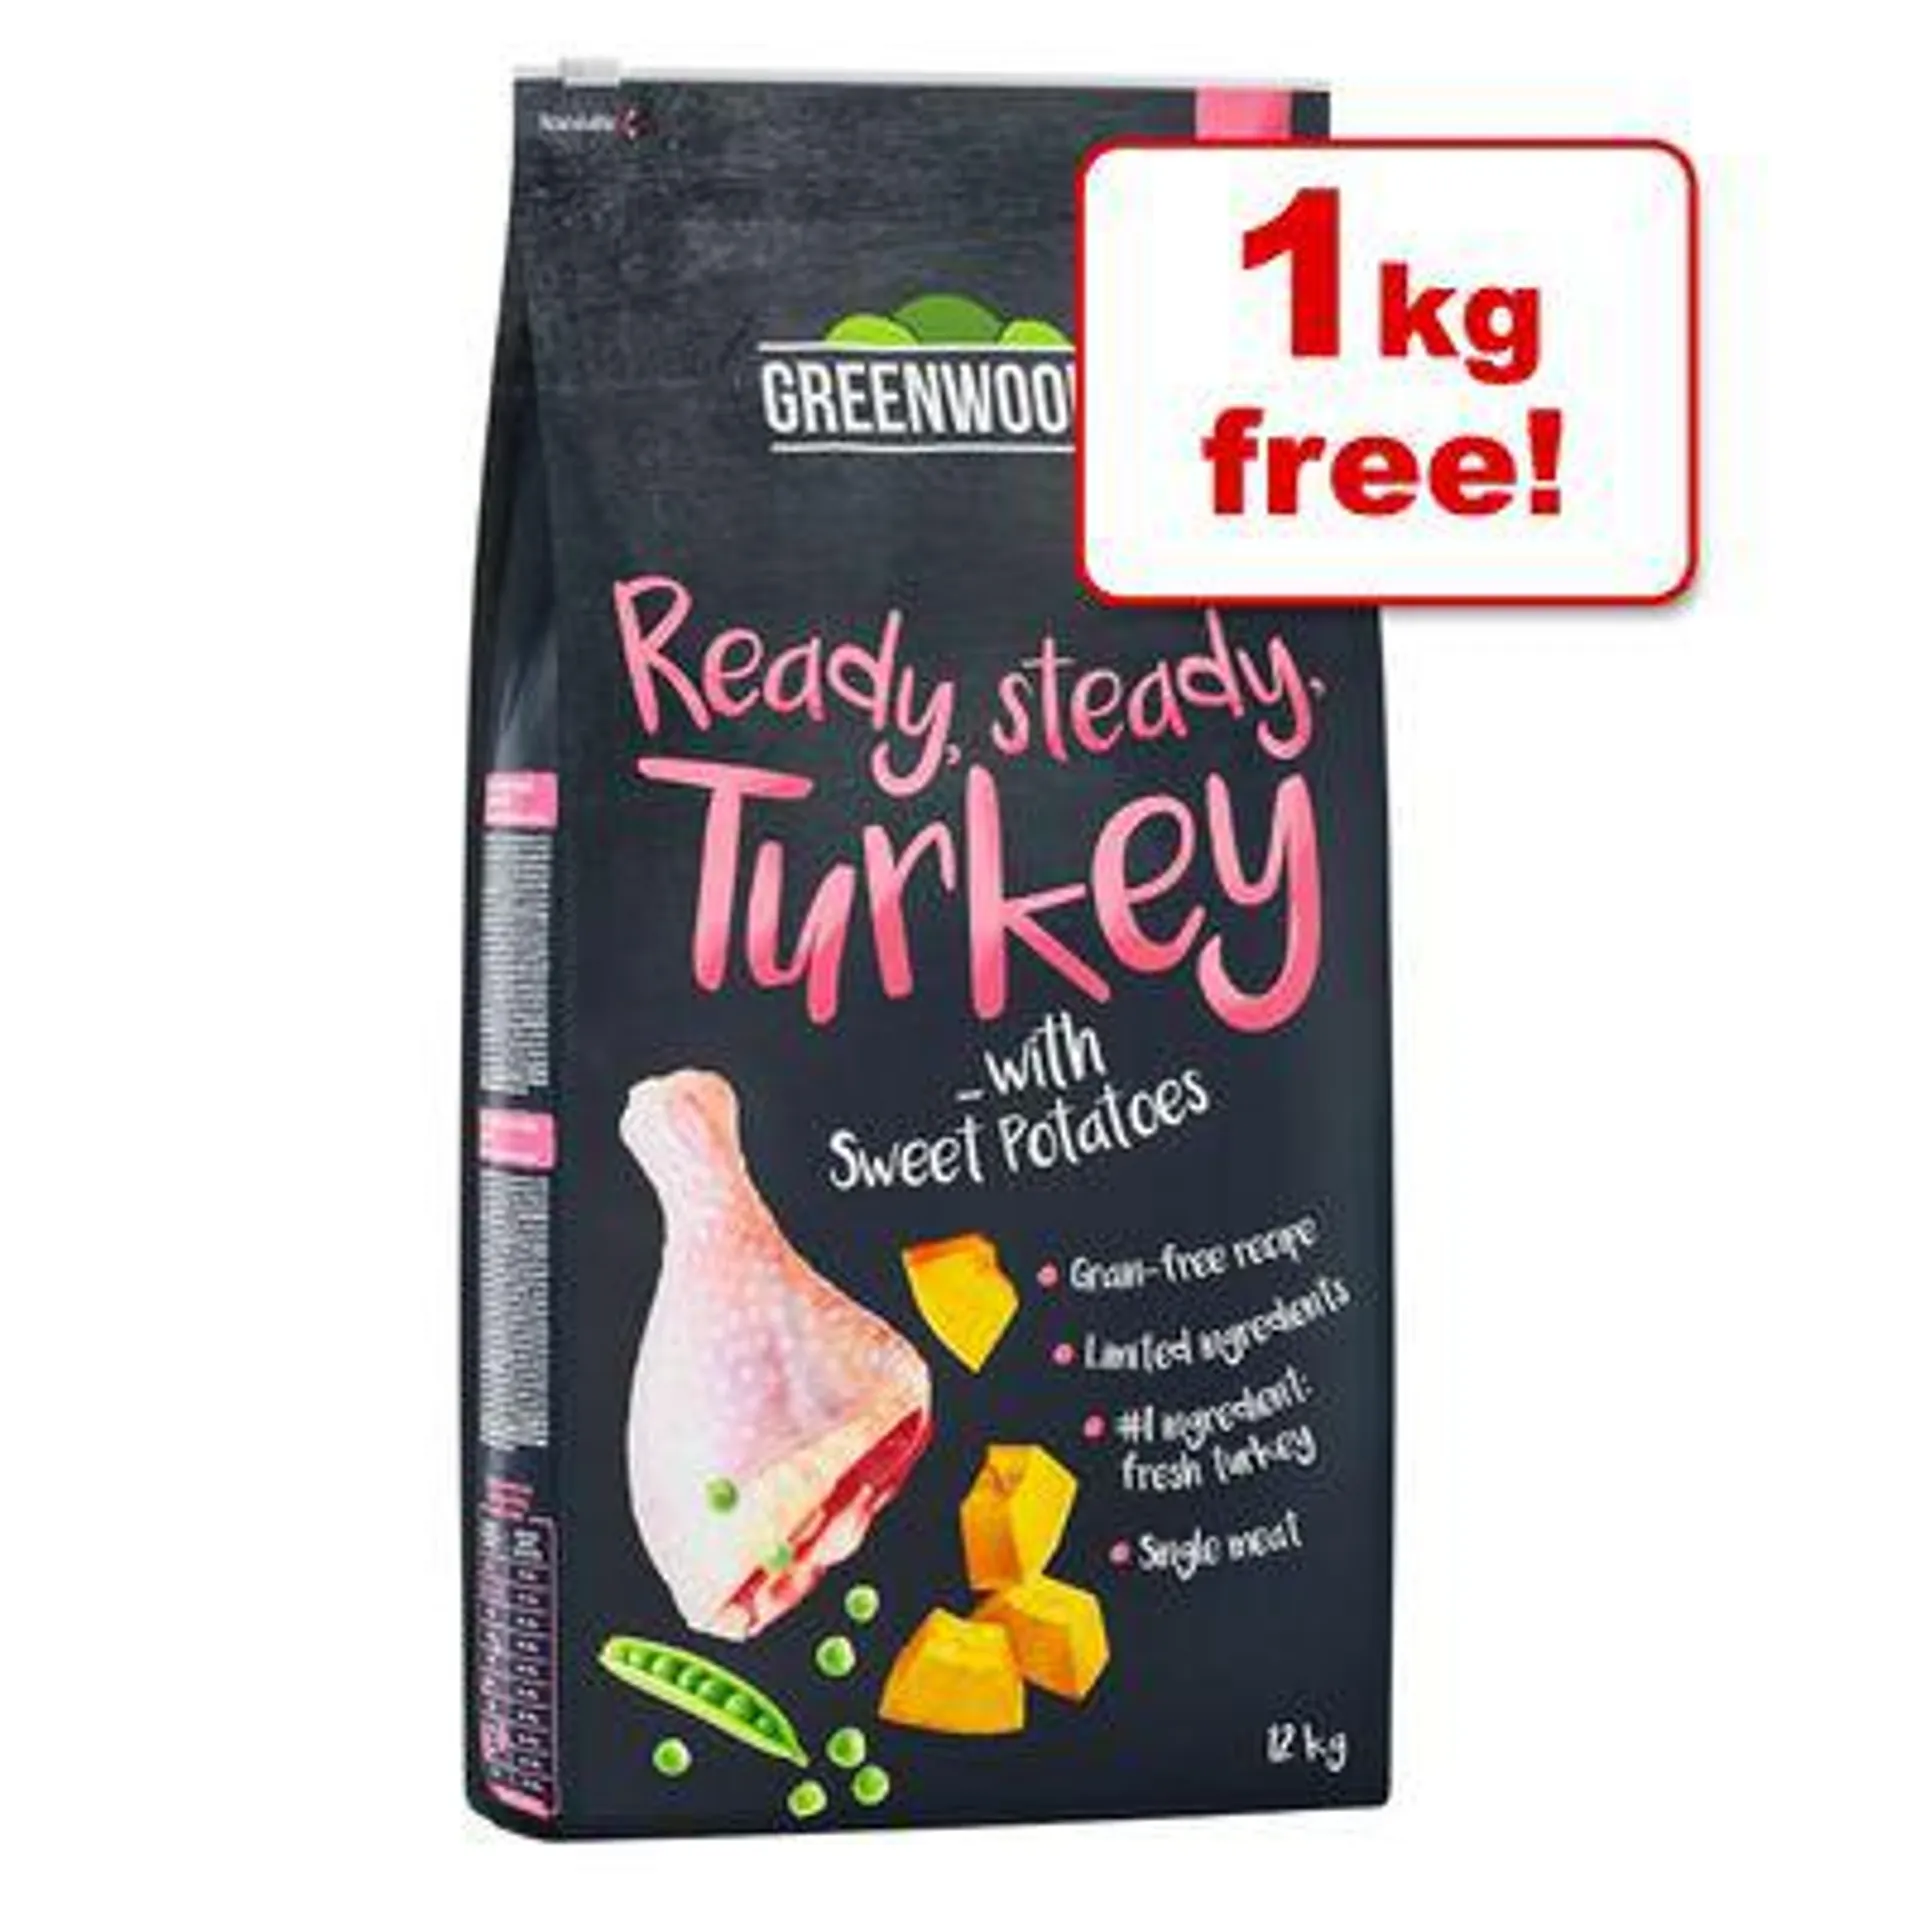 12kg Greenwoods Adult Grain-Free Dry Dog Food - 11kg + 1kg Free!*